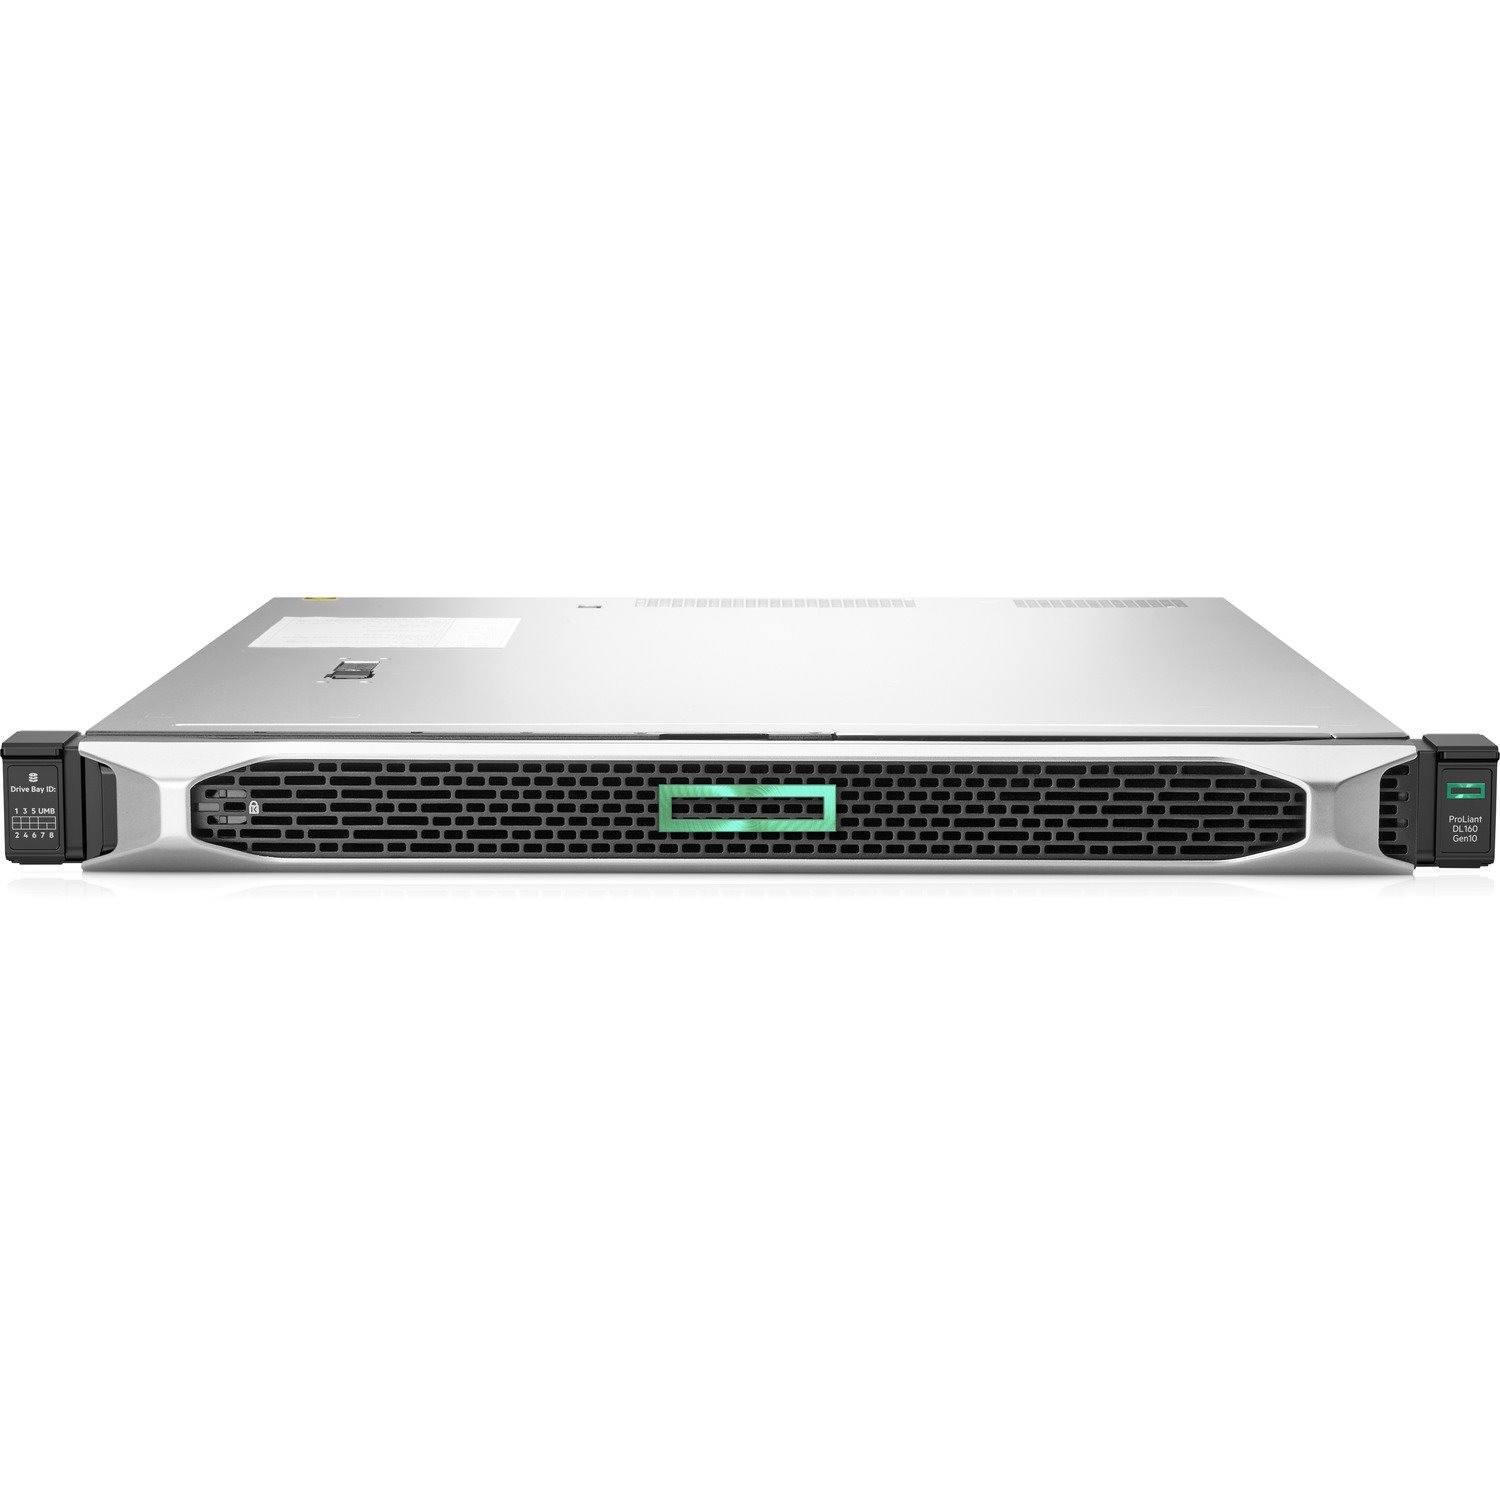 HPE ProLiant DL160 G10 1U Rack Server - 1 x Intel Xeon Silver 4208 2.10 GHz - 16 GB RAM - Serial ATA/600 Controller